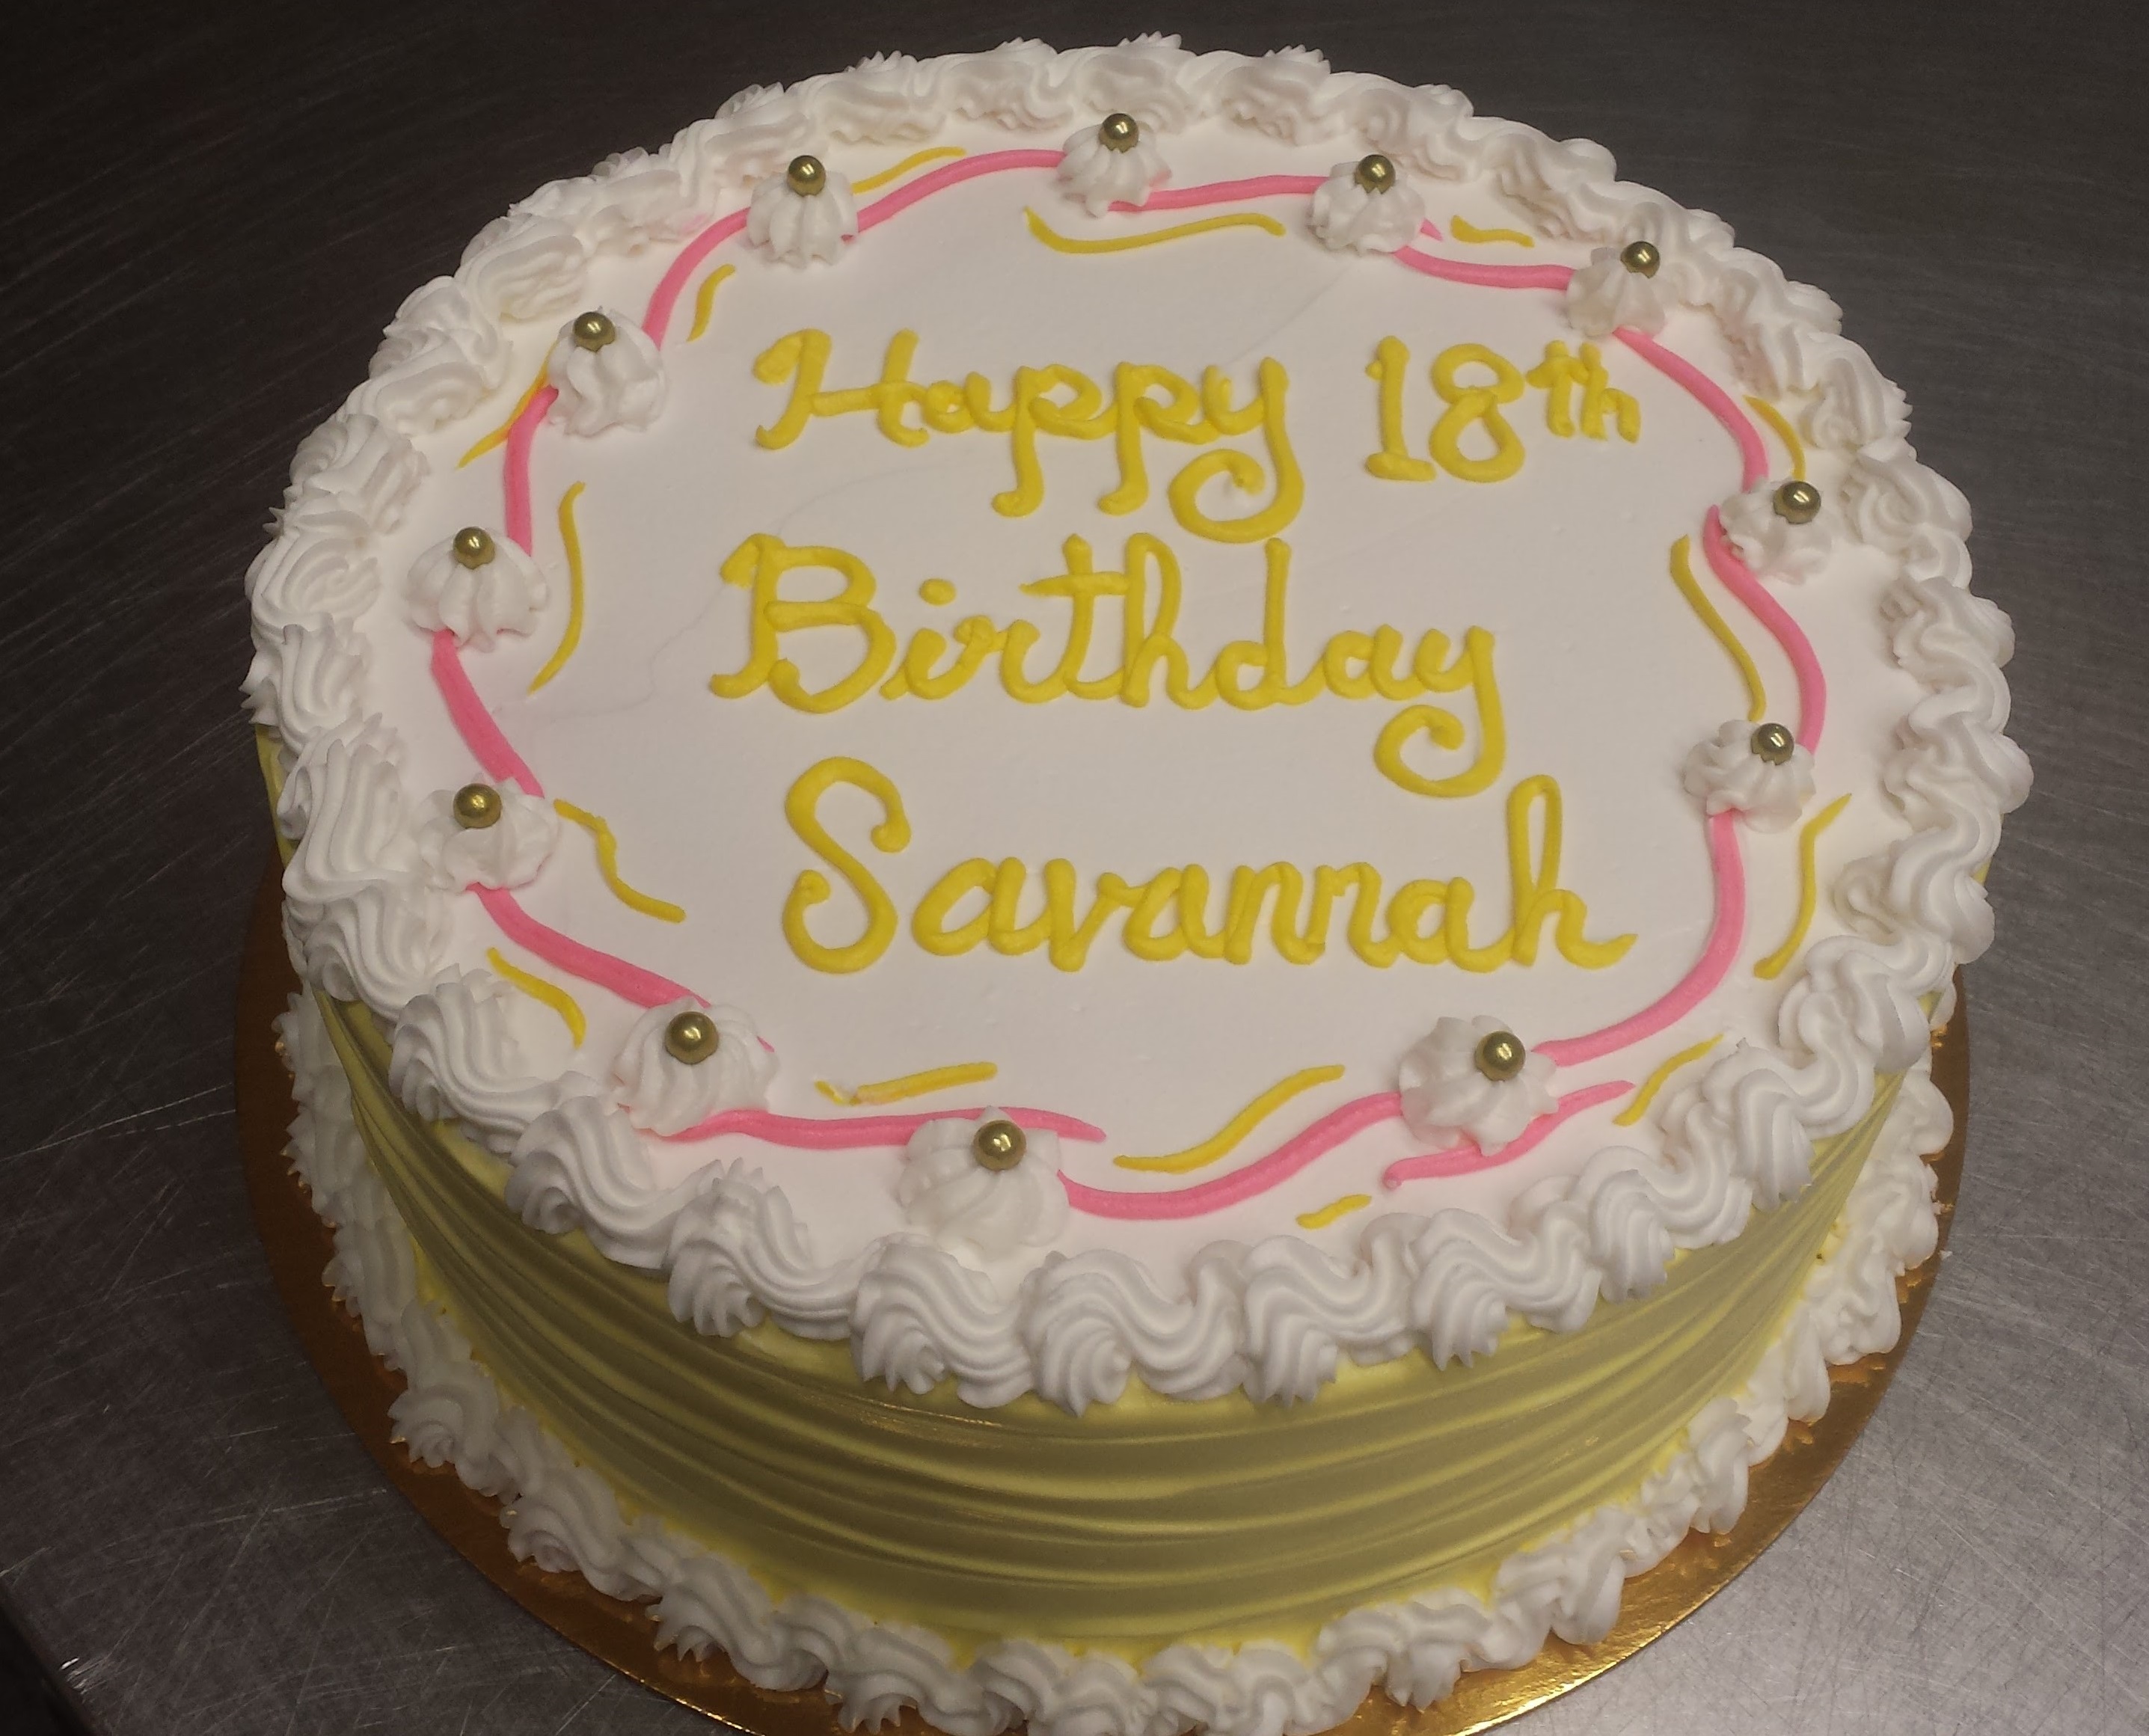 Regular 15 Buttercream Birthday Cake For Woman/Girl